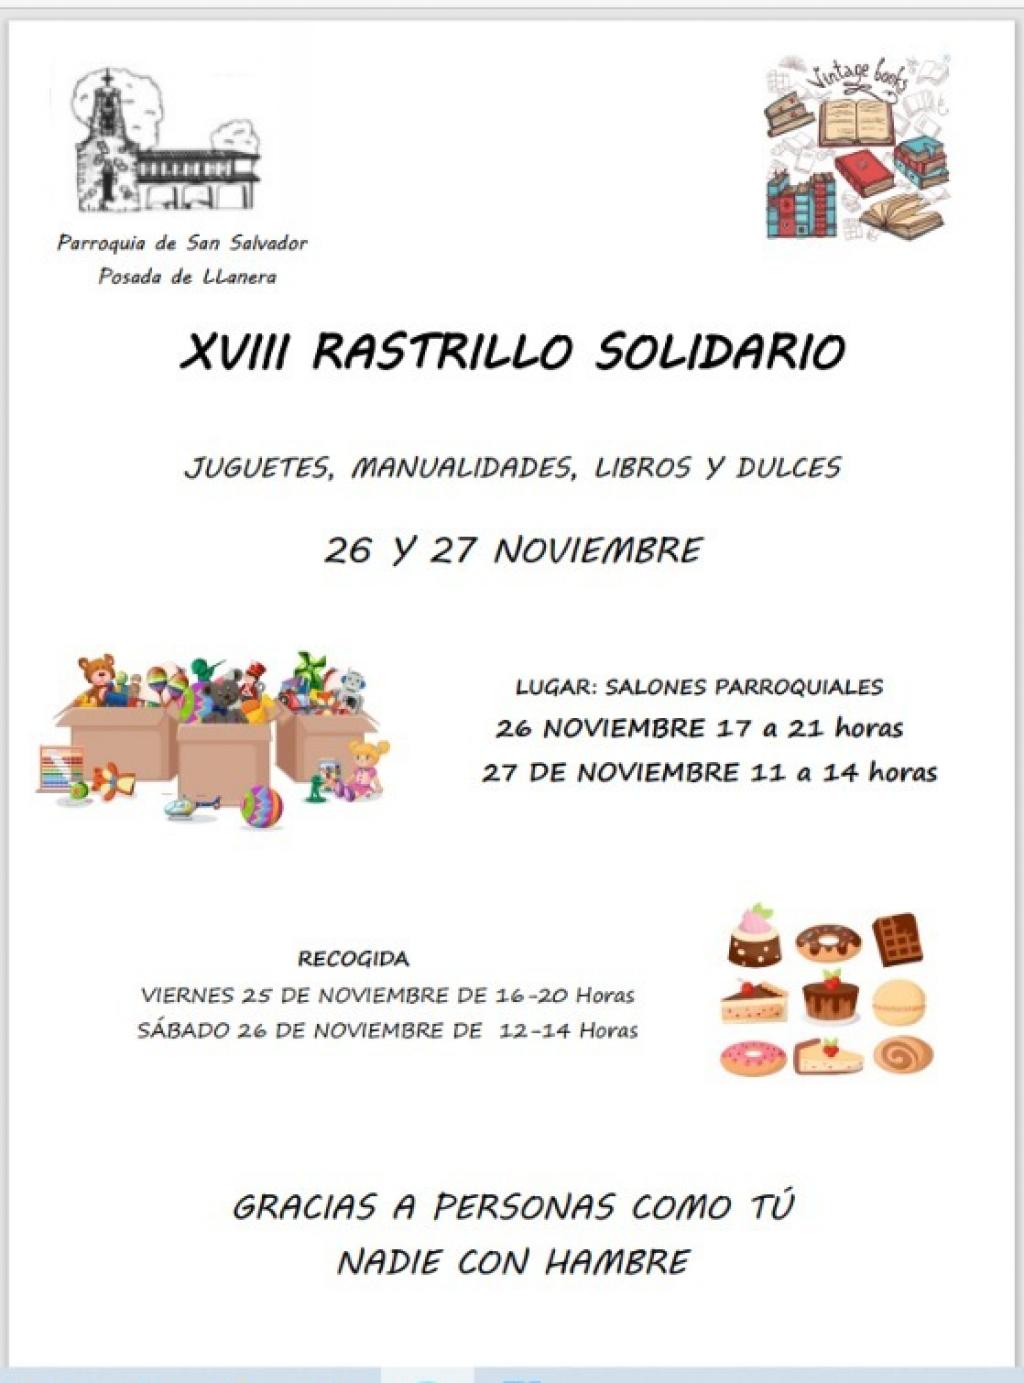 El Tapin - La Parroquia San Salvador de Rondiella organiza su XVIII Rastrillo Solidario los días 26 y 27 de noviembre